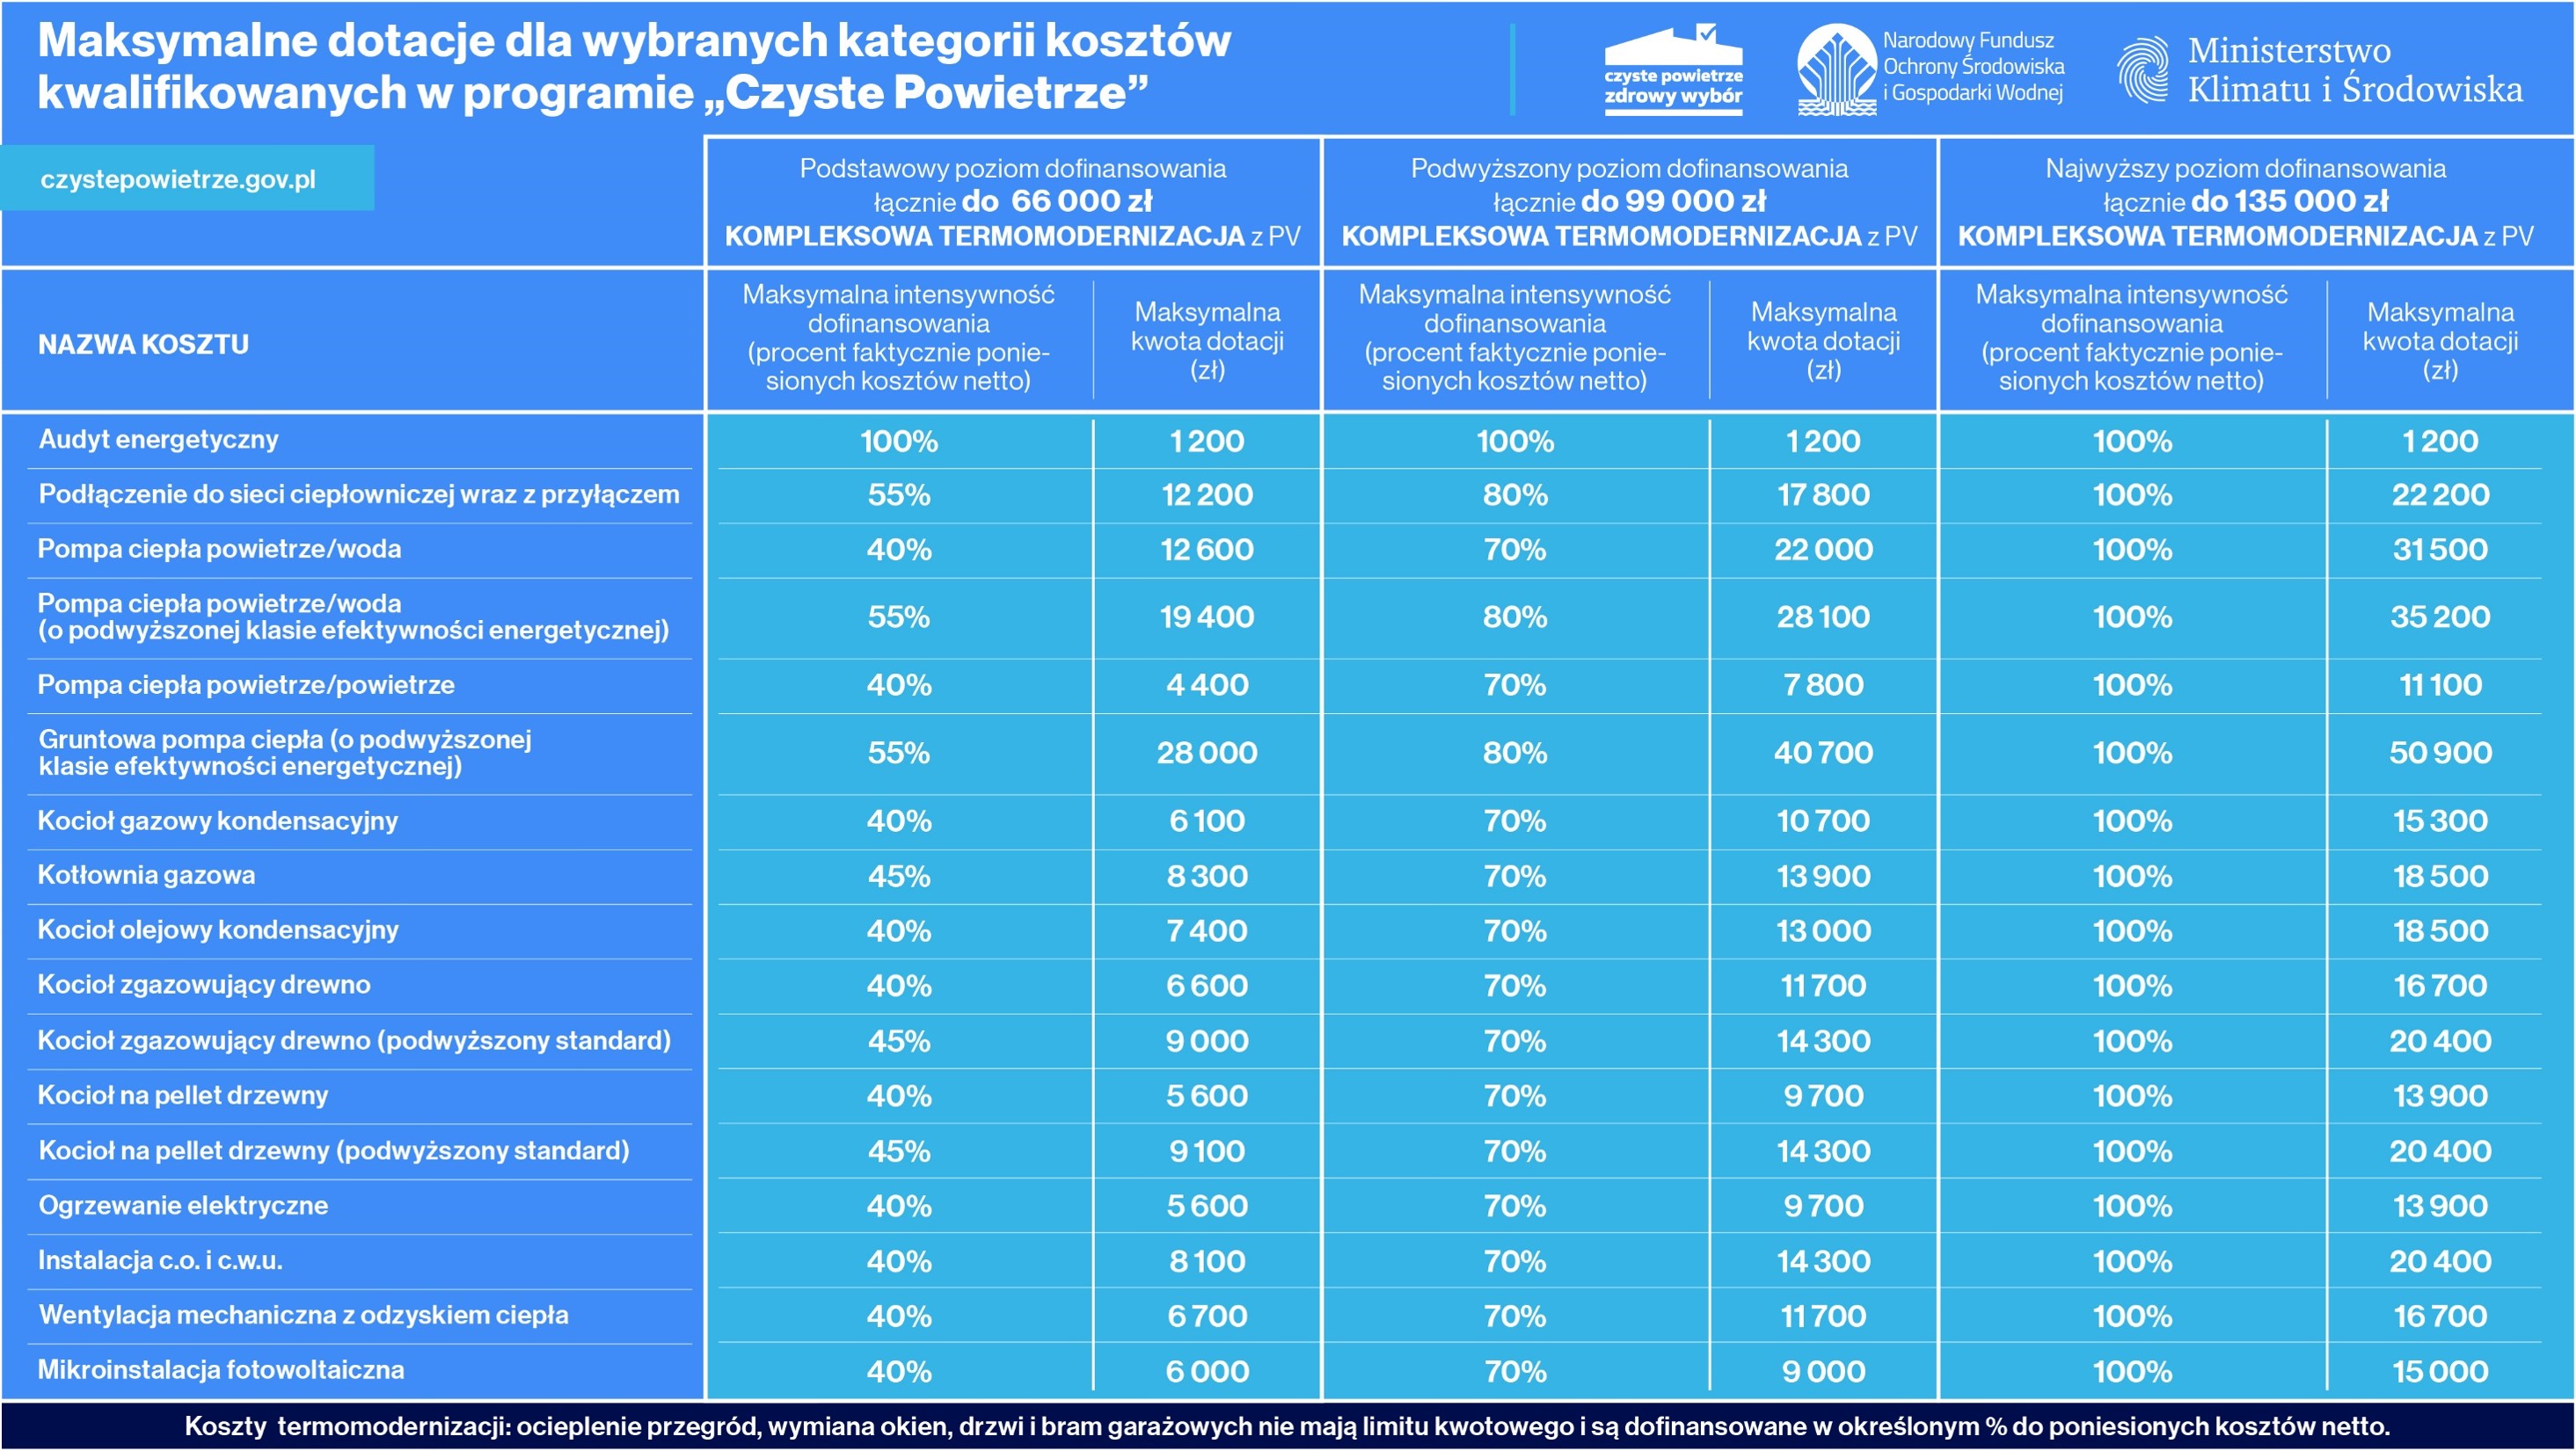 Plakat przedstawiający tabelę o nazwie "Maksymalne dotacje dla wybranych kategorii kosztów kwalifikowanych w programie Czyste Powietrze"